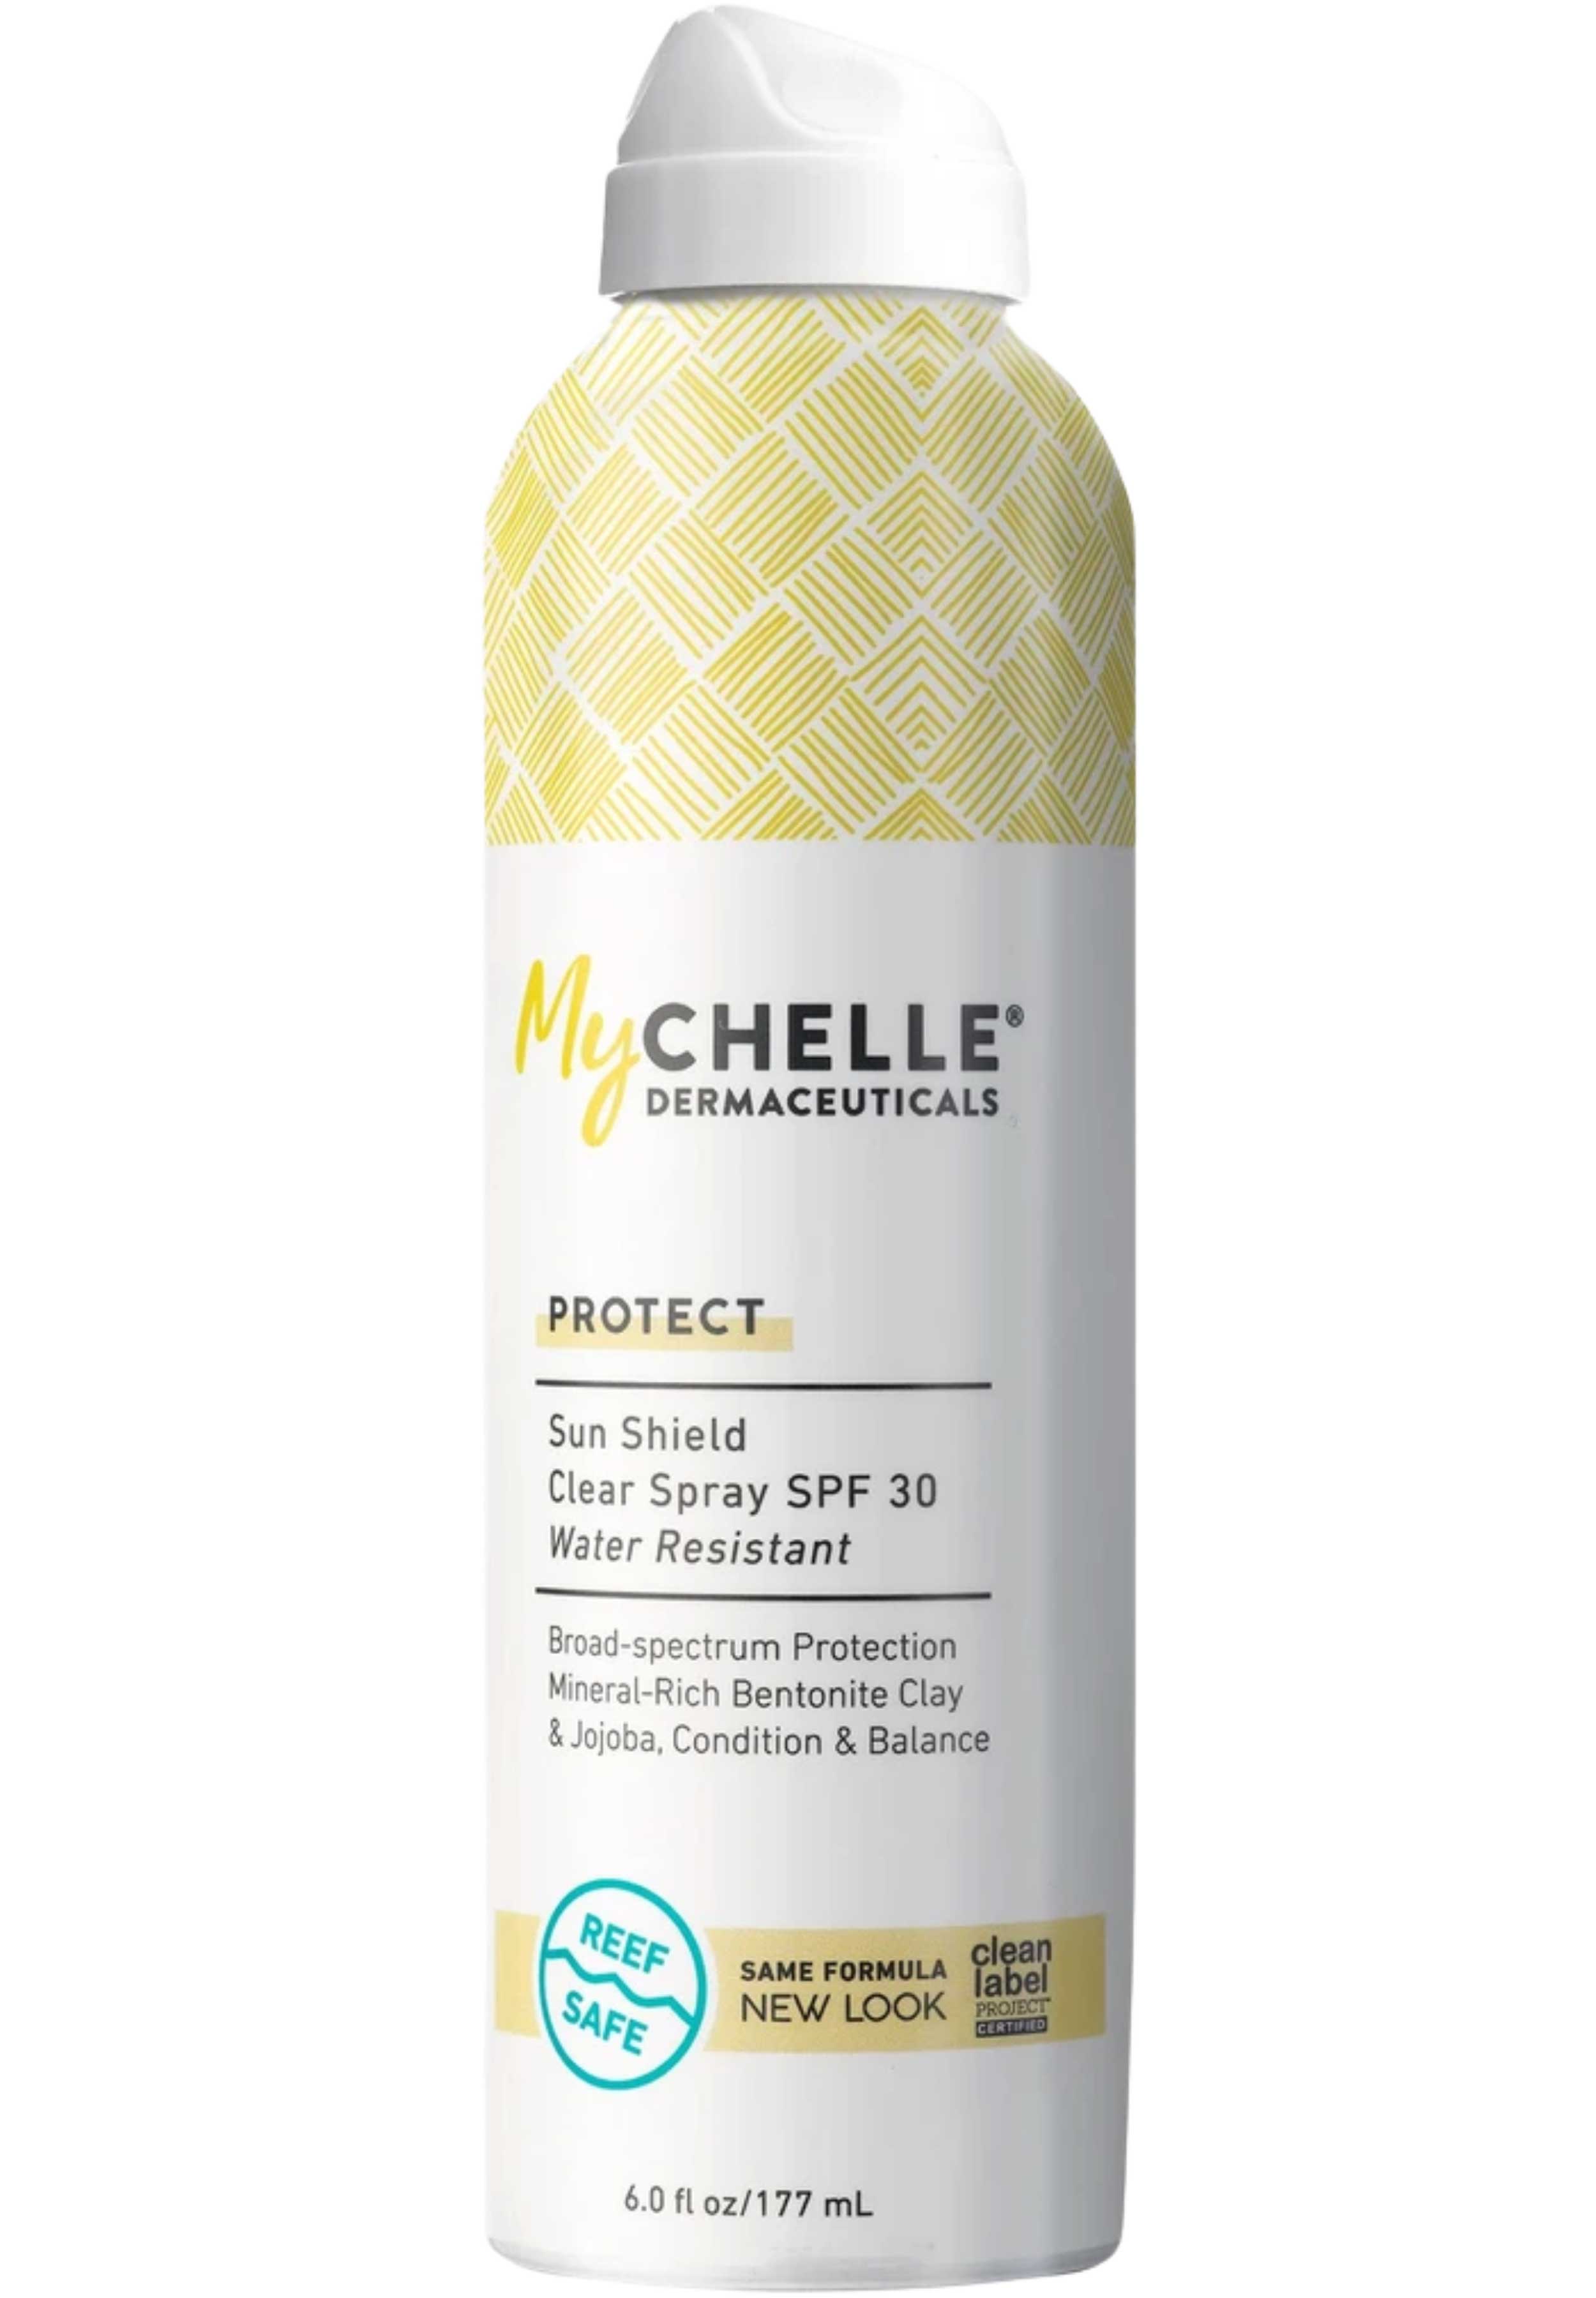 MyChelle Dermaceuticals Sun Shield Clear Spray SPF 30